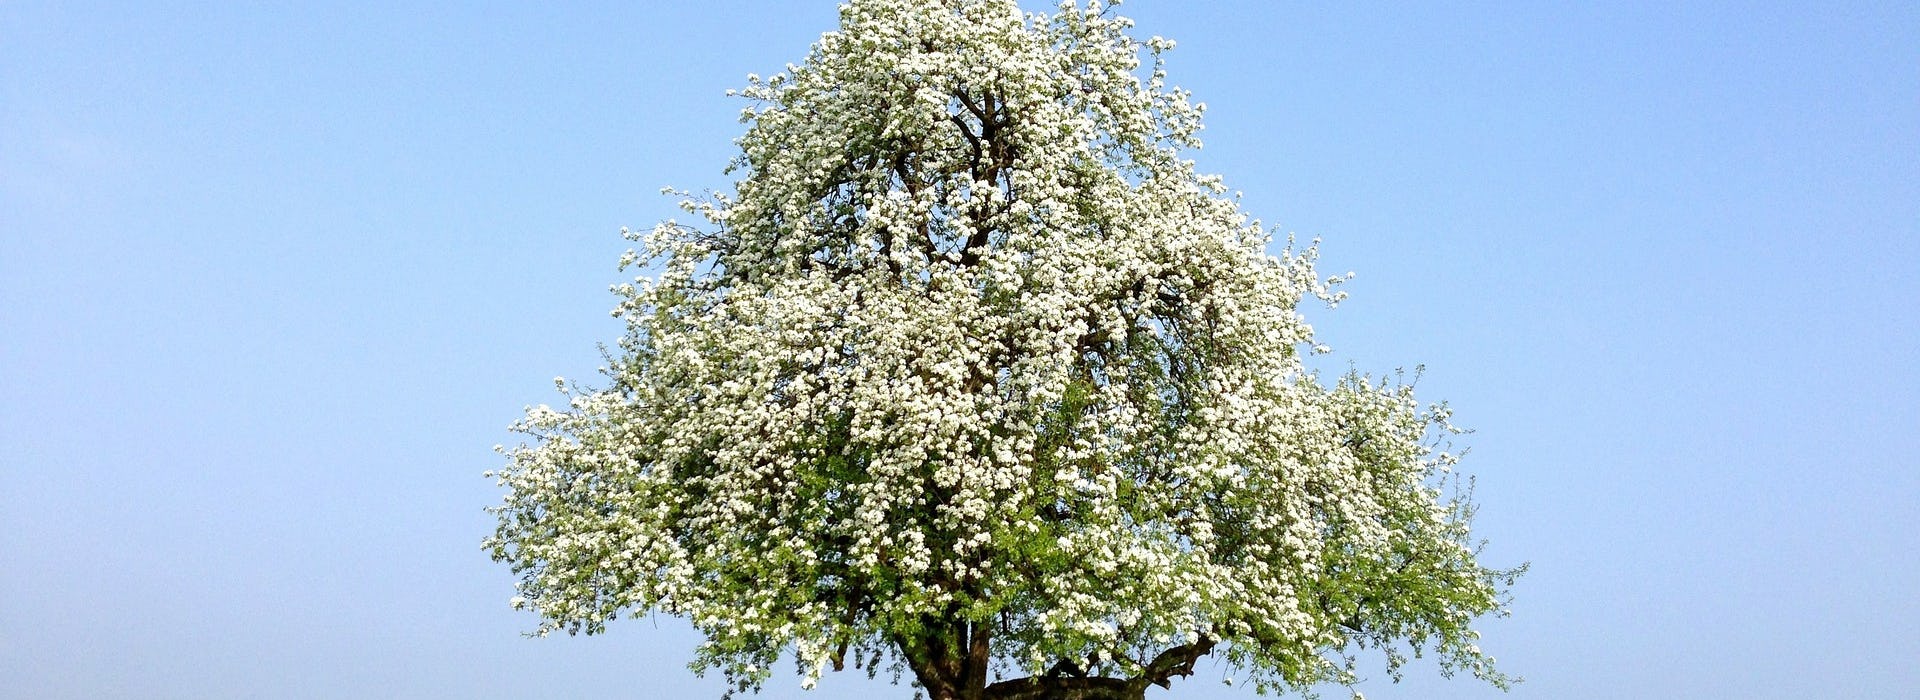 Baum Frühling Ramsauer Carreisen GmbH Bluestfahrt